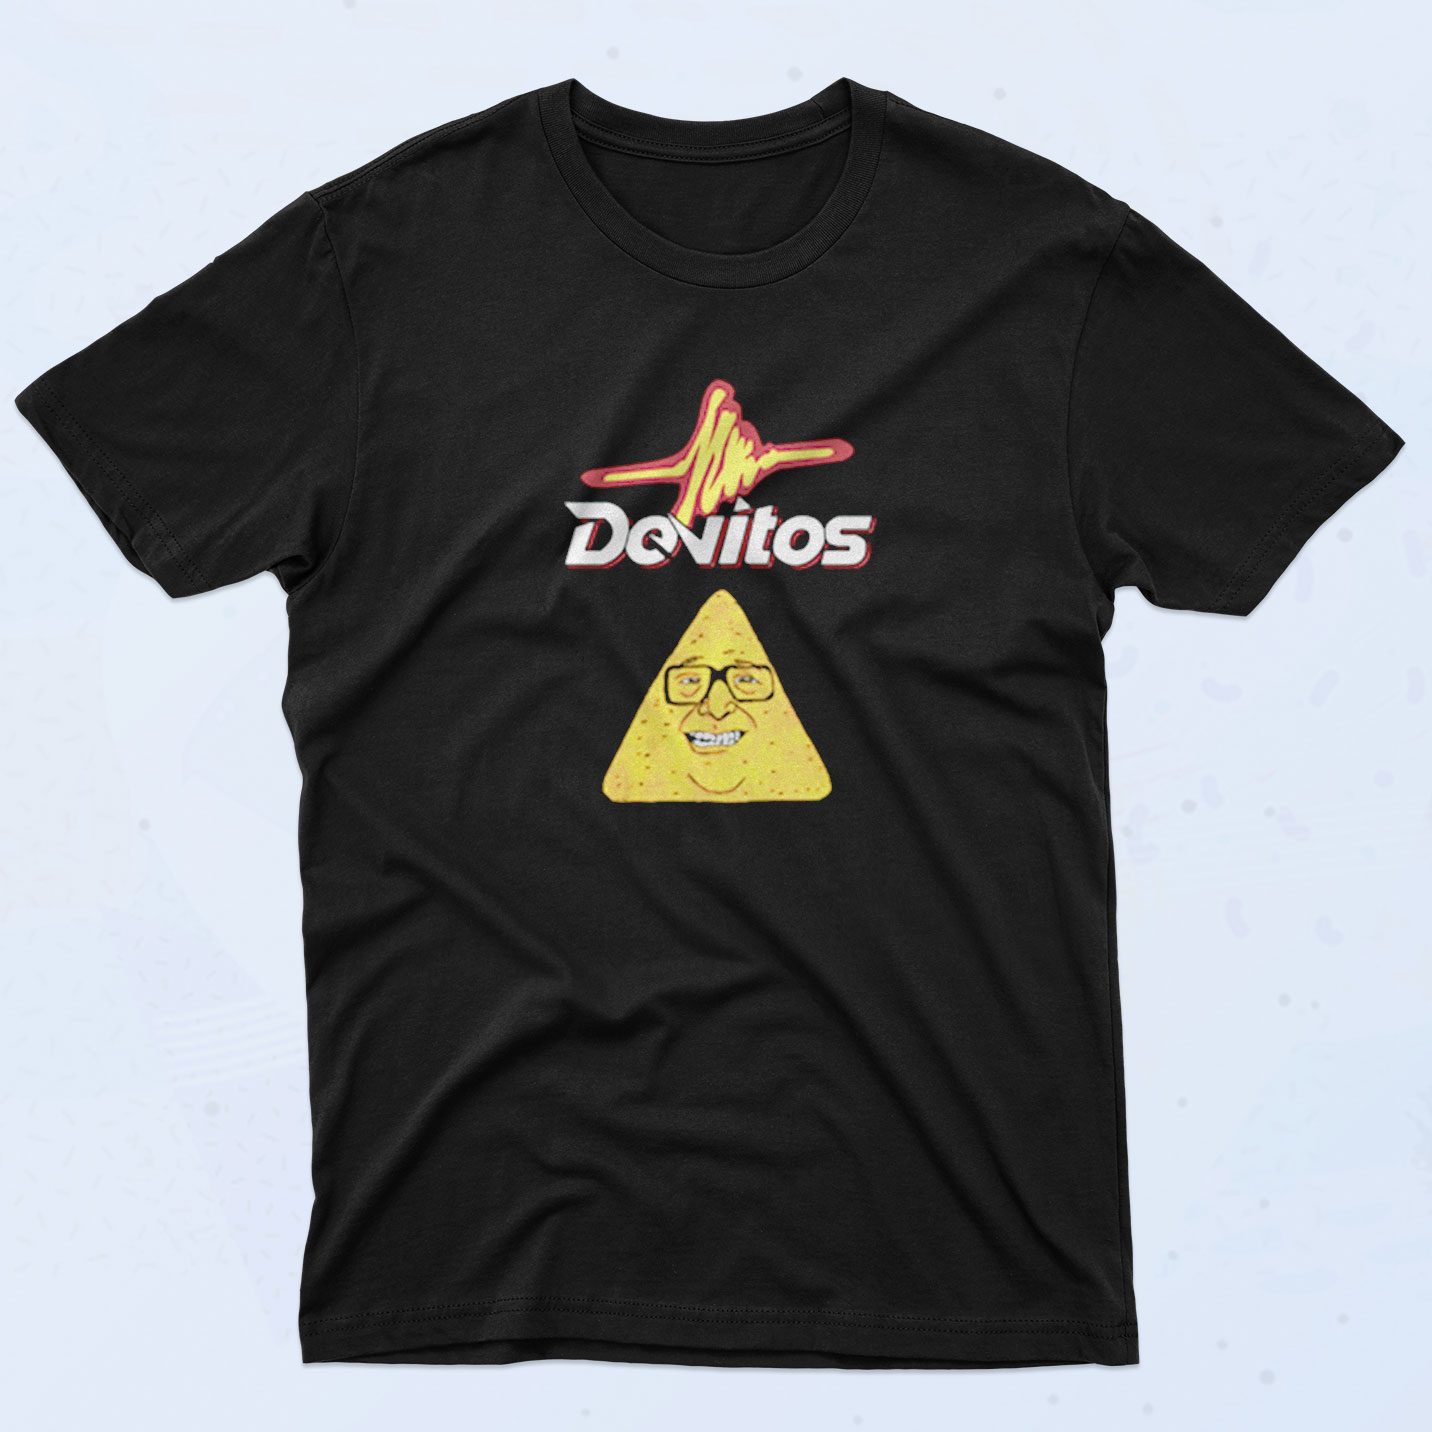 Danny Devito Doritos 90s T Shirt Idea